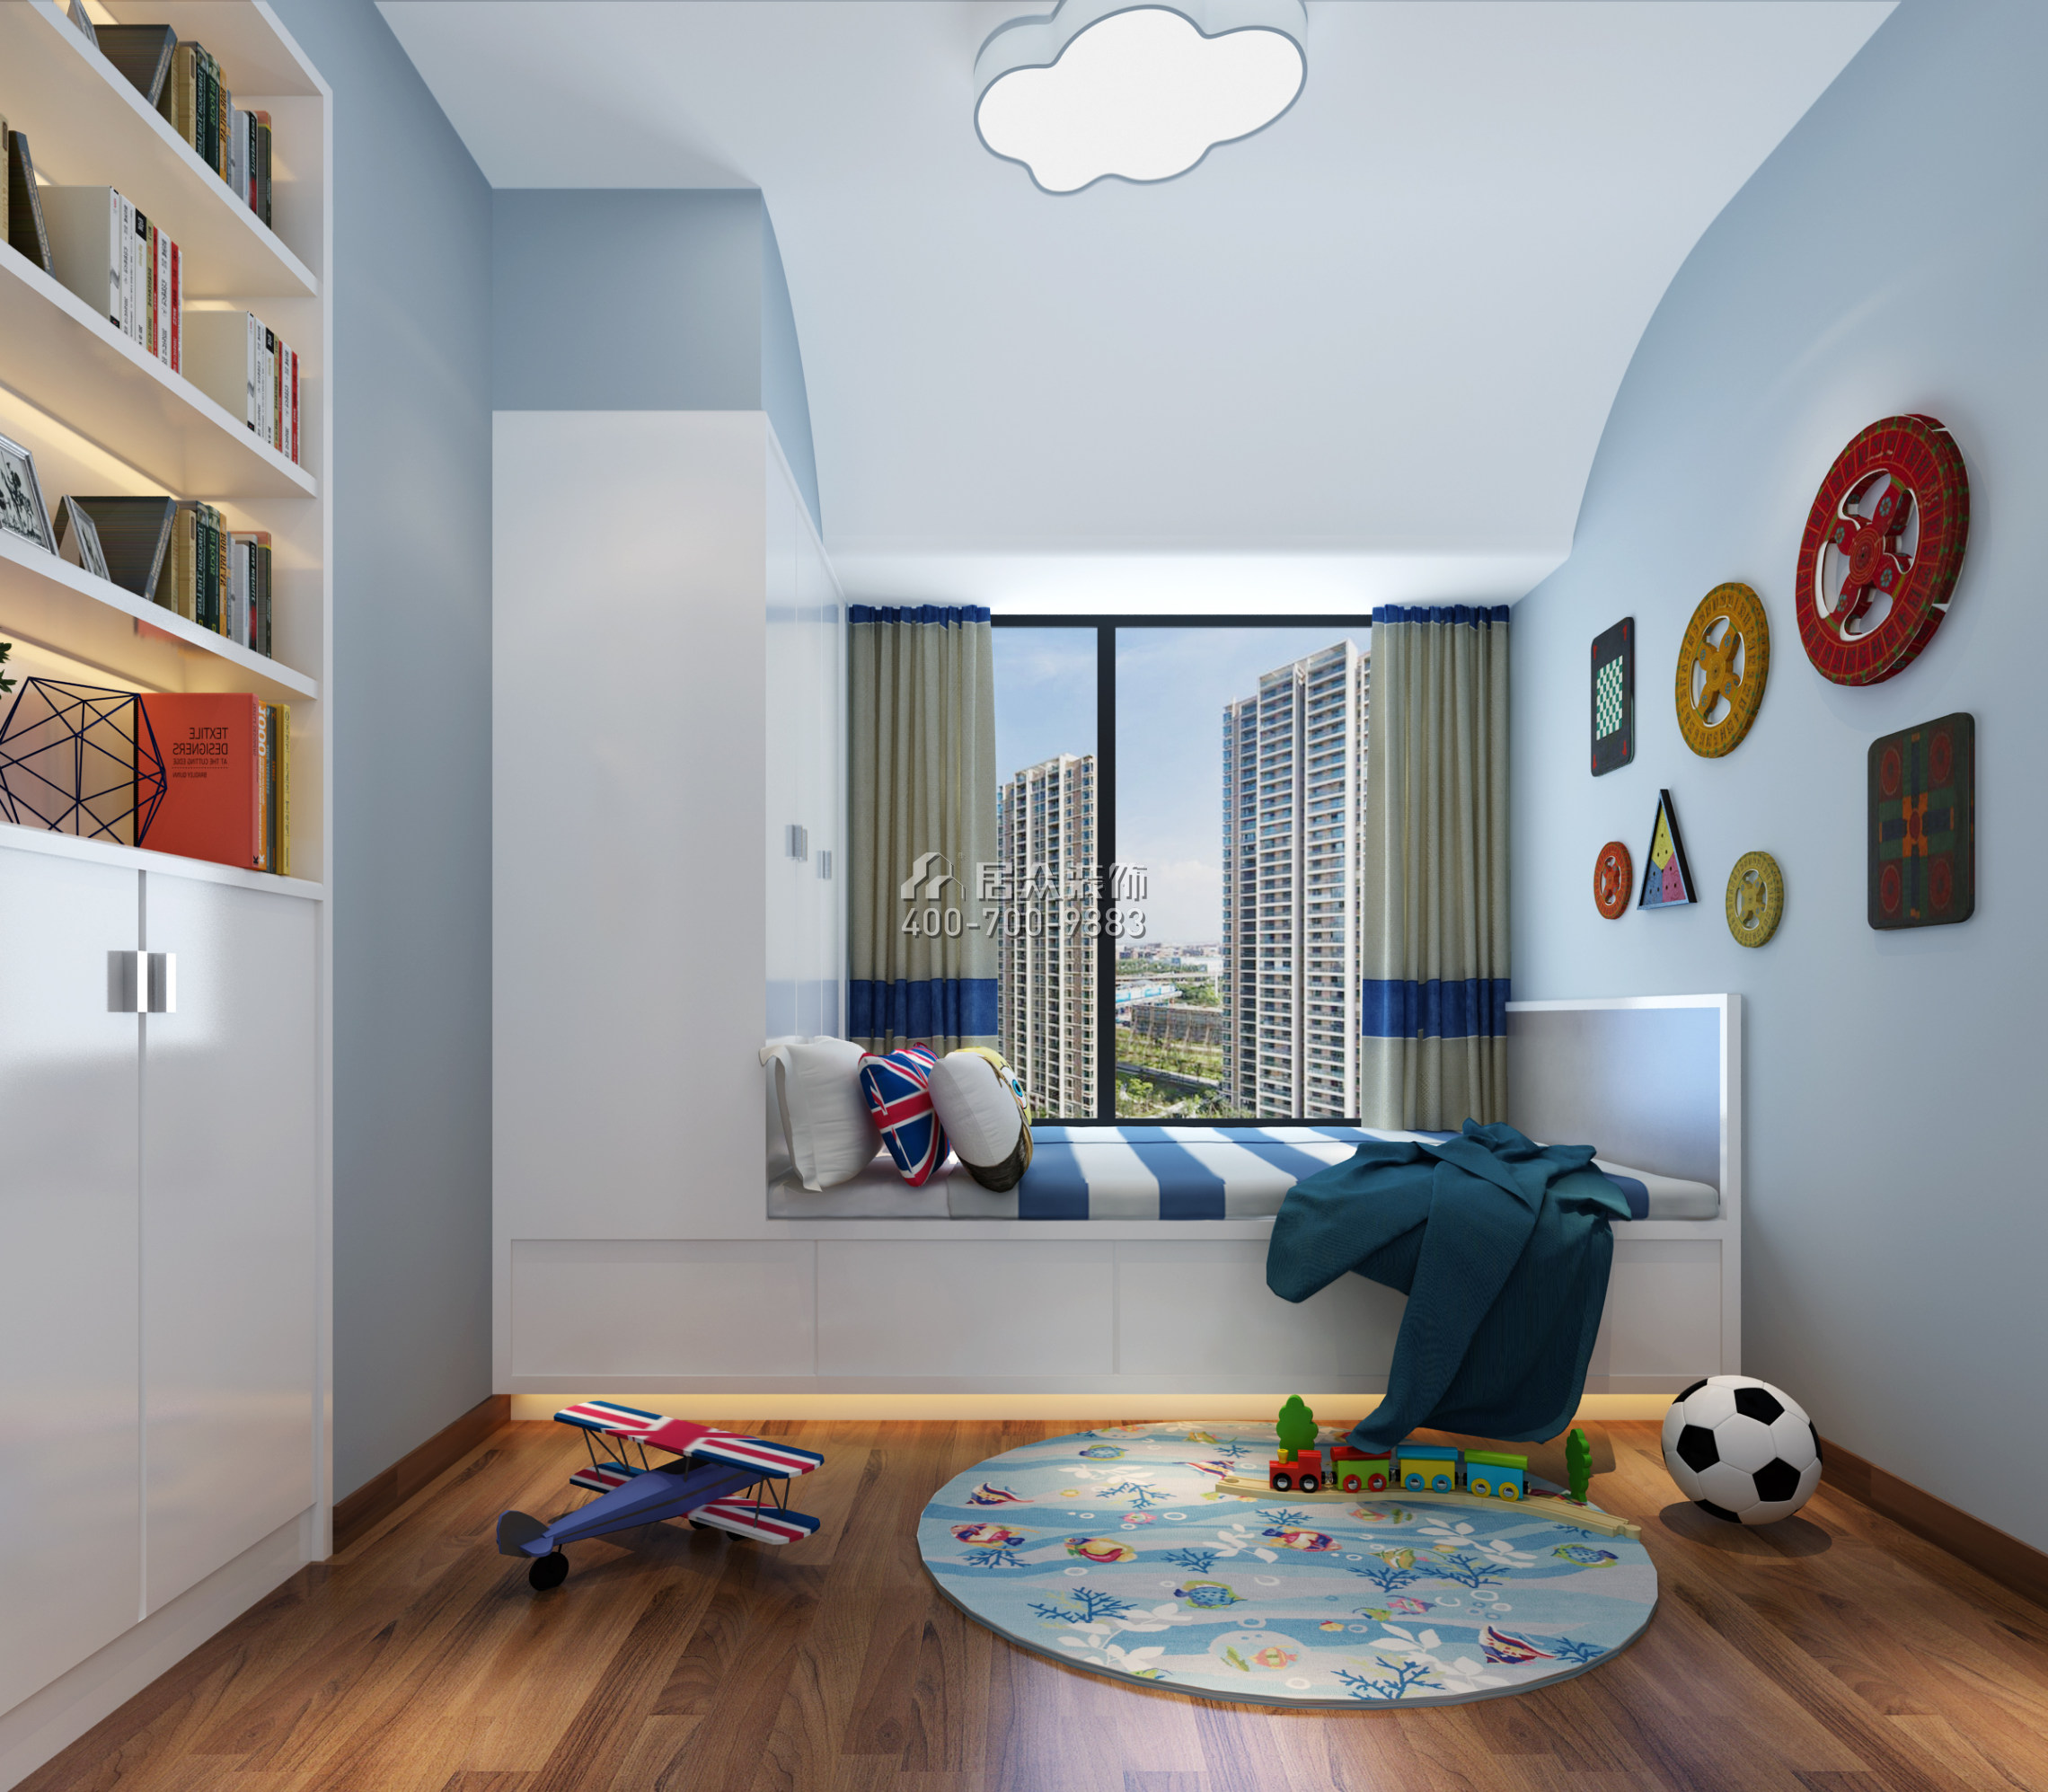 天匯城105平方米歐式風格平層戶型兒童房裝修效果圖